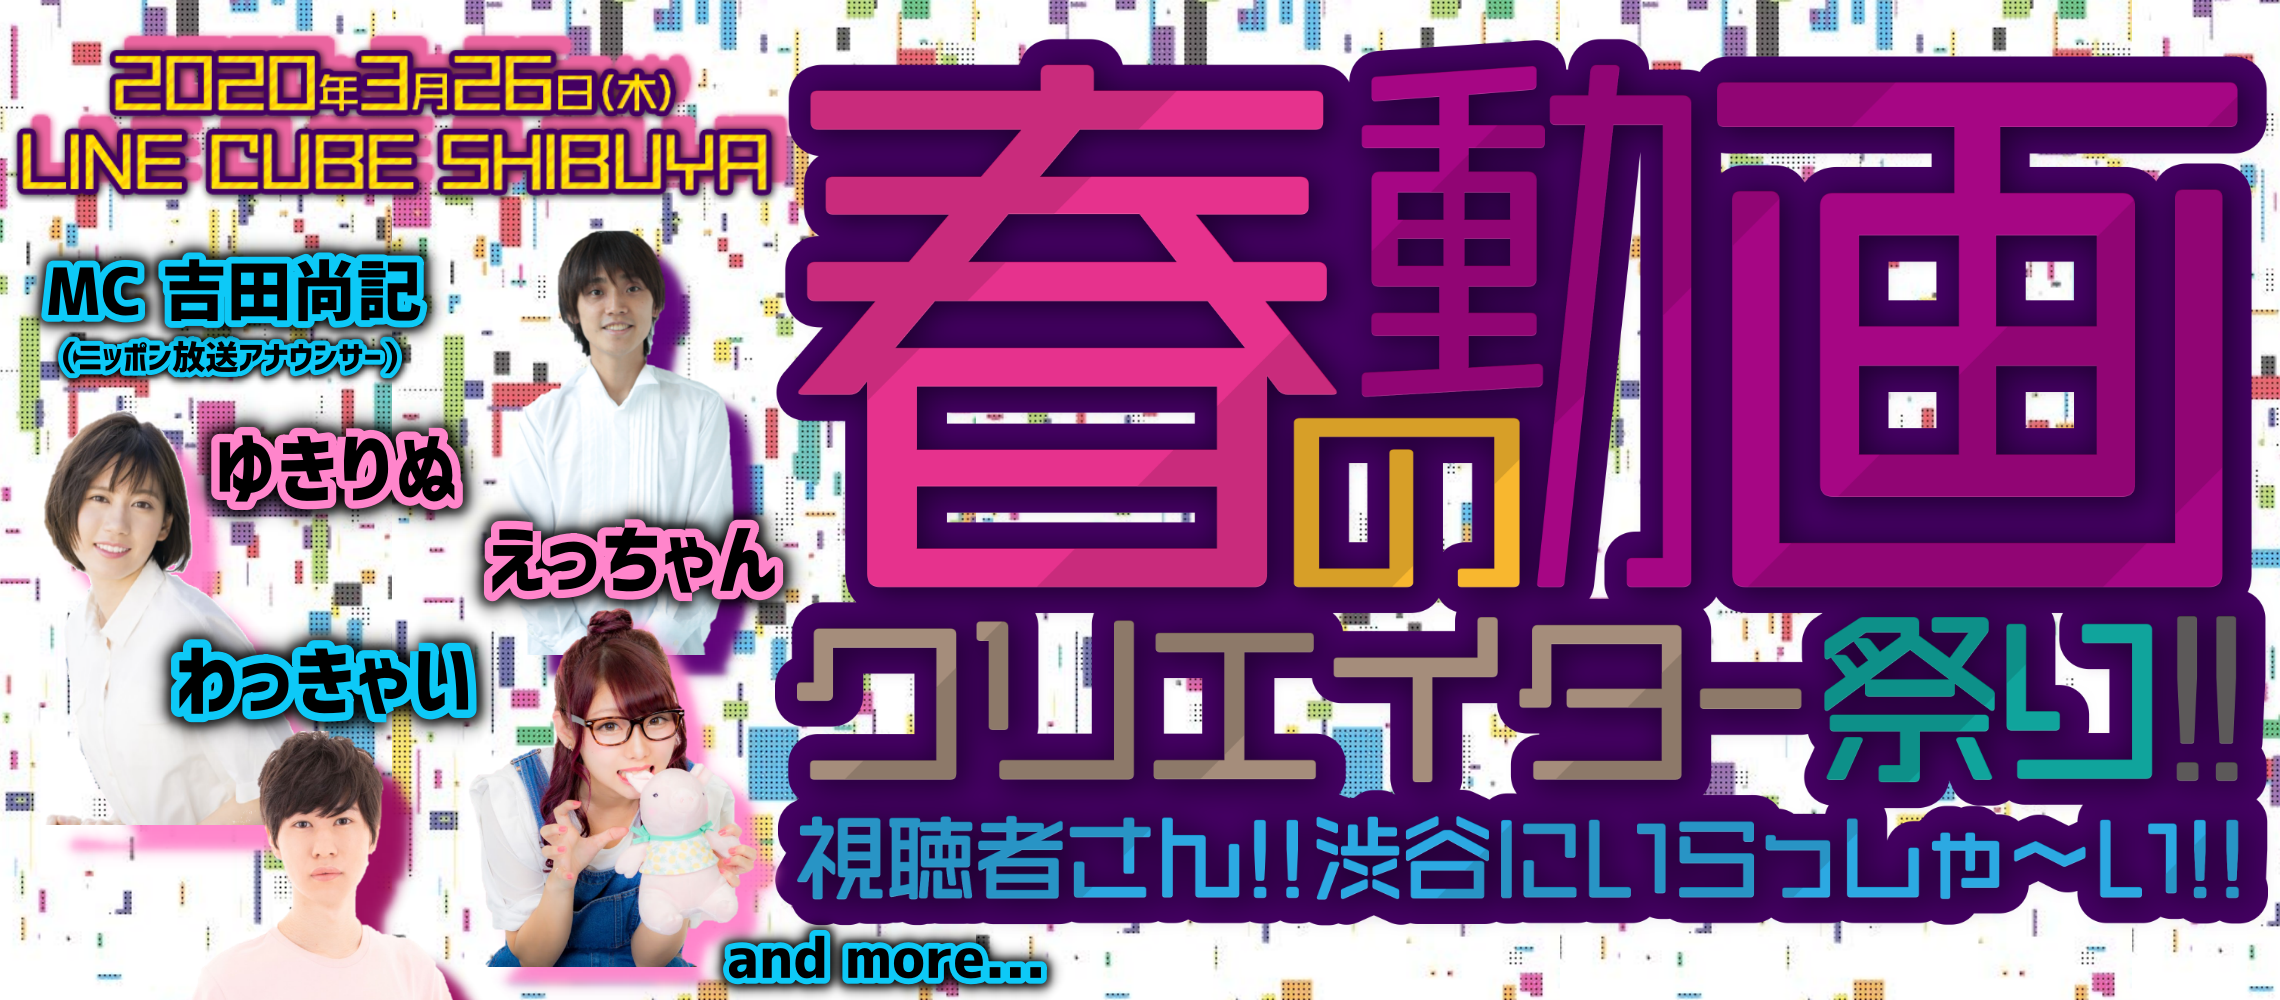 春の動画クリエイター祭り!! 〜視聴者さん!!渋谷にいらっしゃ〜い!!〜 2020年3月26日LINE CUBE SHIBUYAにて開催決定!!